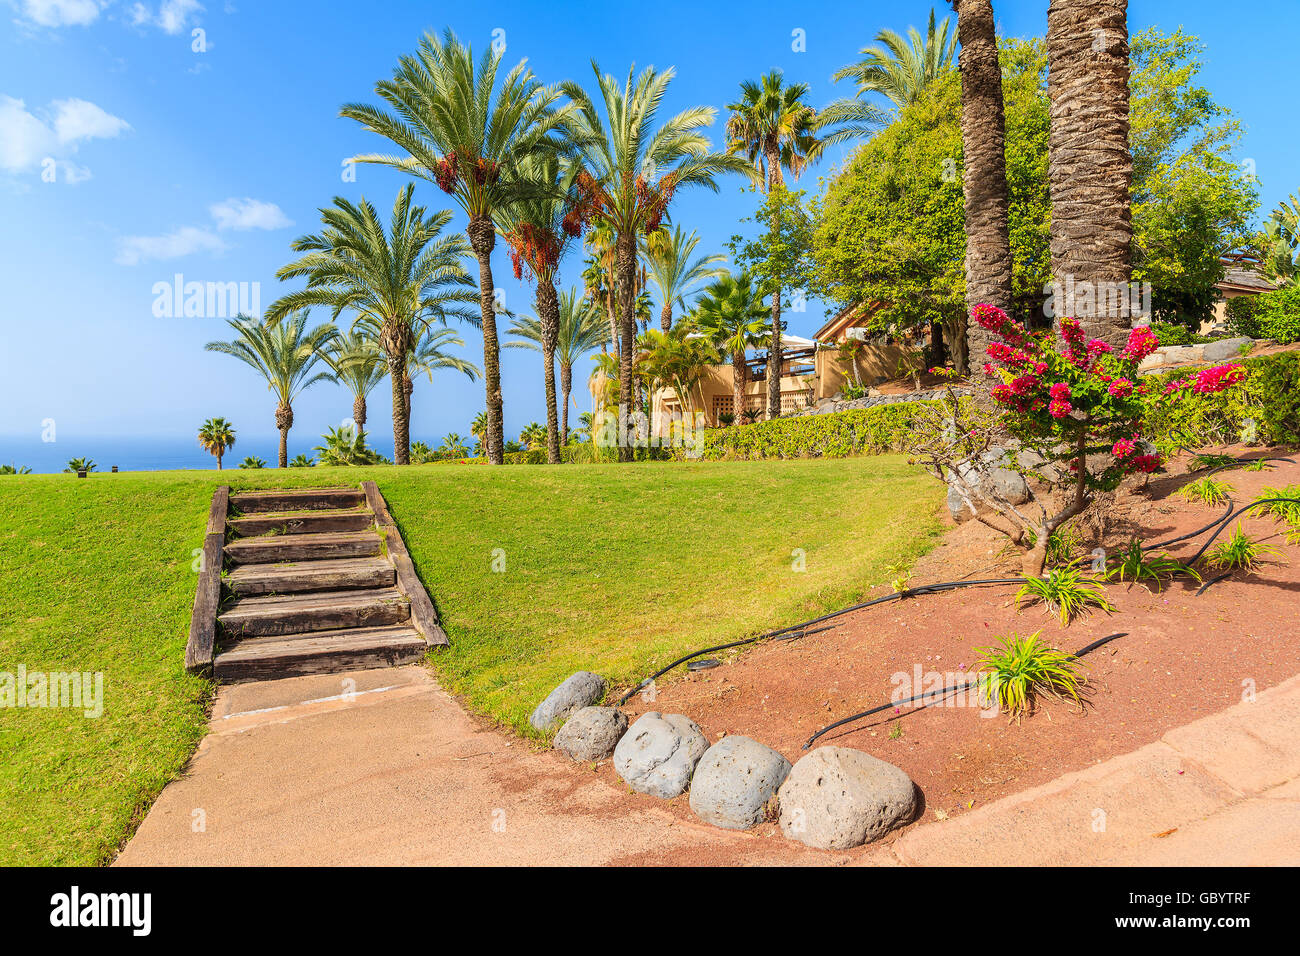 Gradini in legno e le palme nel giardino tropicale sull'isola di Tenerife, Spagna Foto Stock